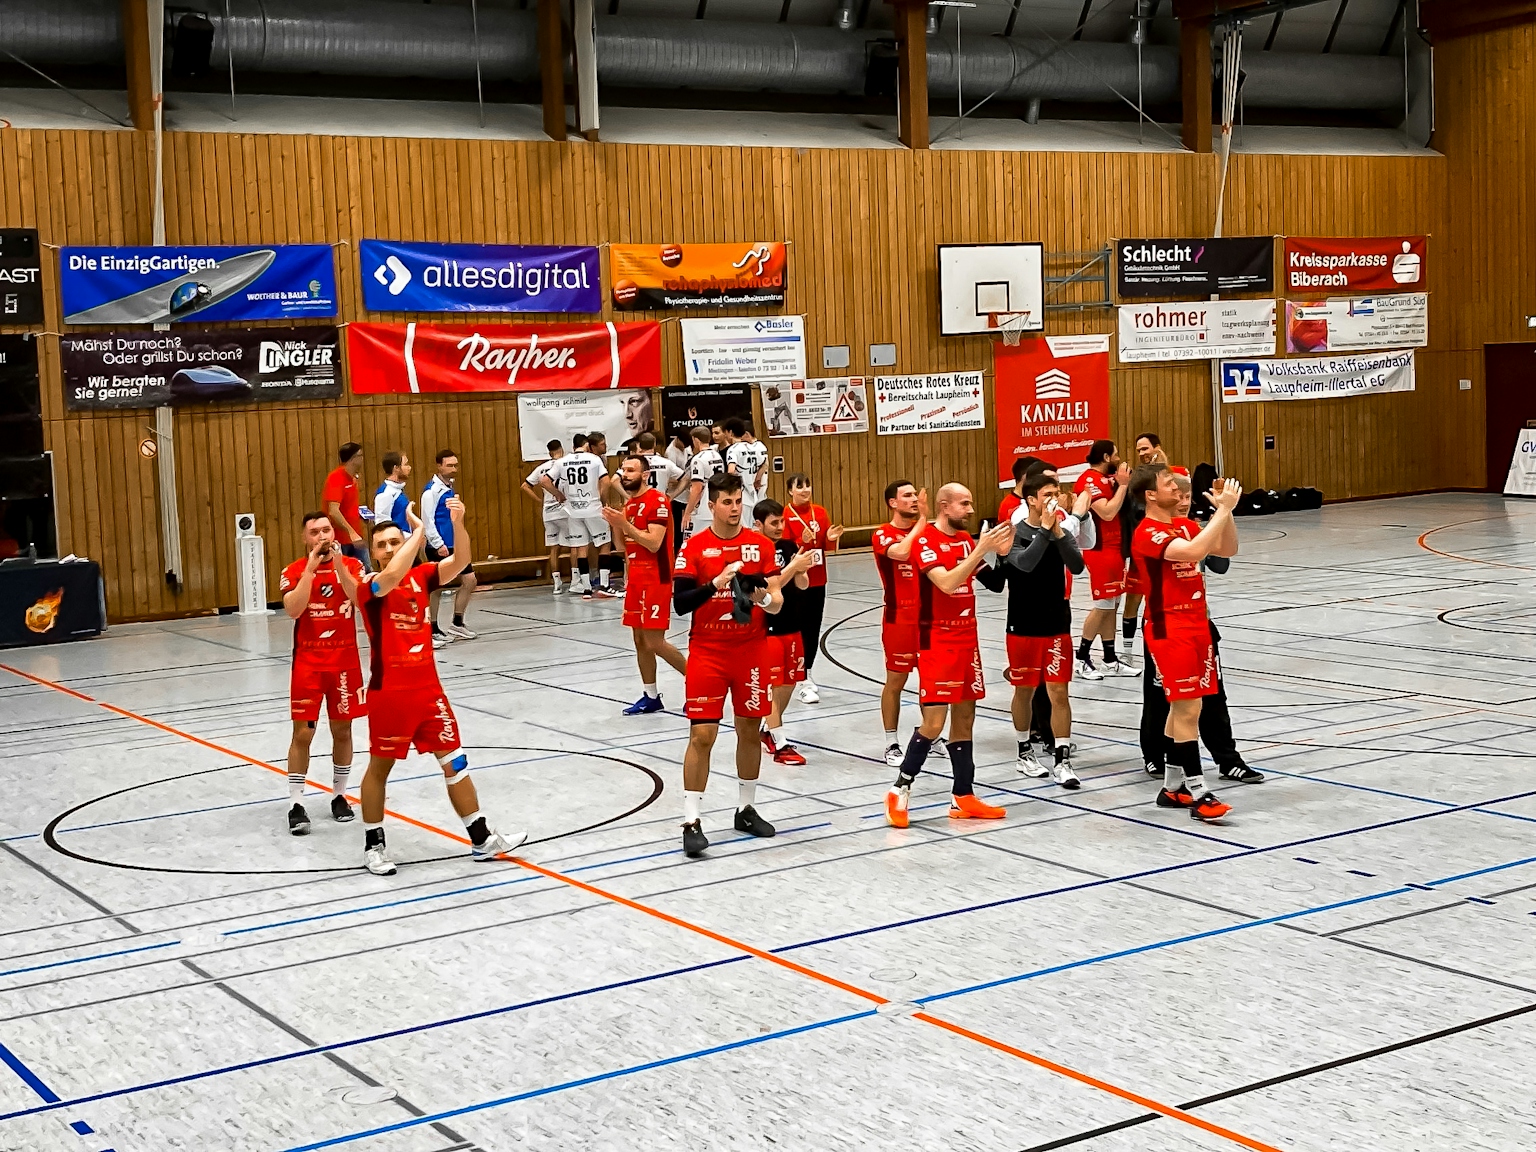 Handballspieler des HRW-Laupheim in rotem Trikot kurz vor dem Abwurf.